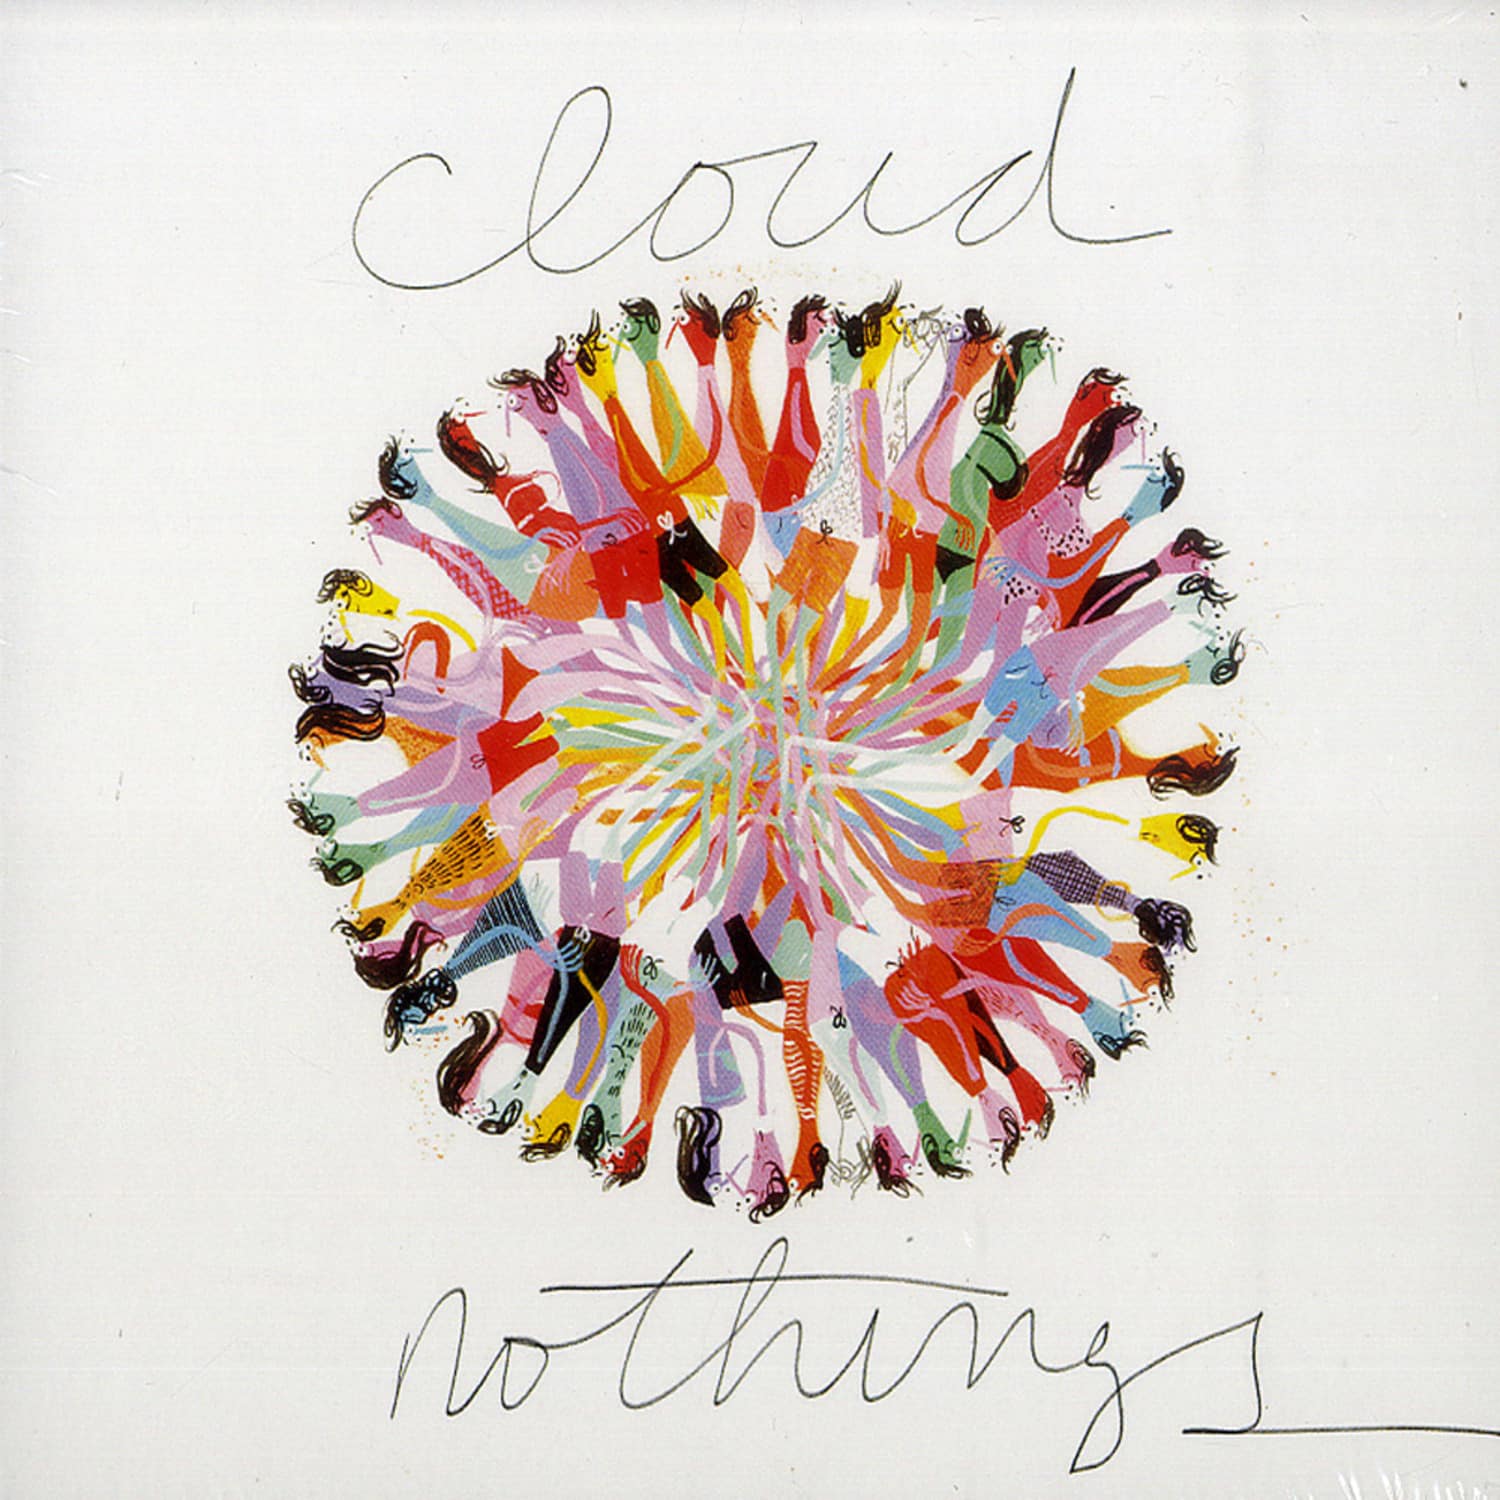 Cloud Nothings - CLOUD NOTHINGS 